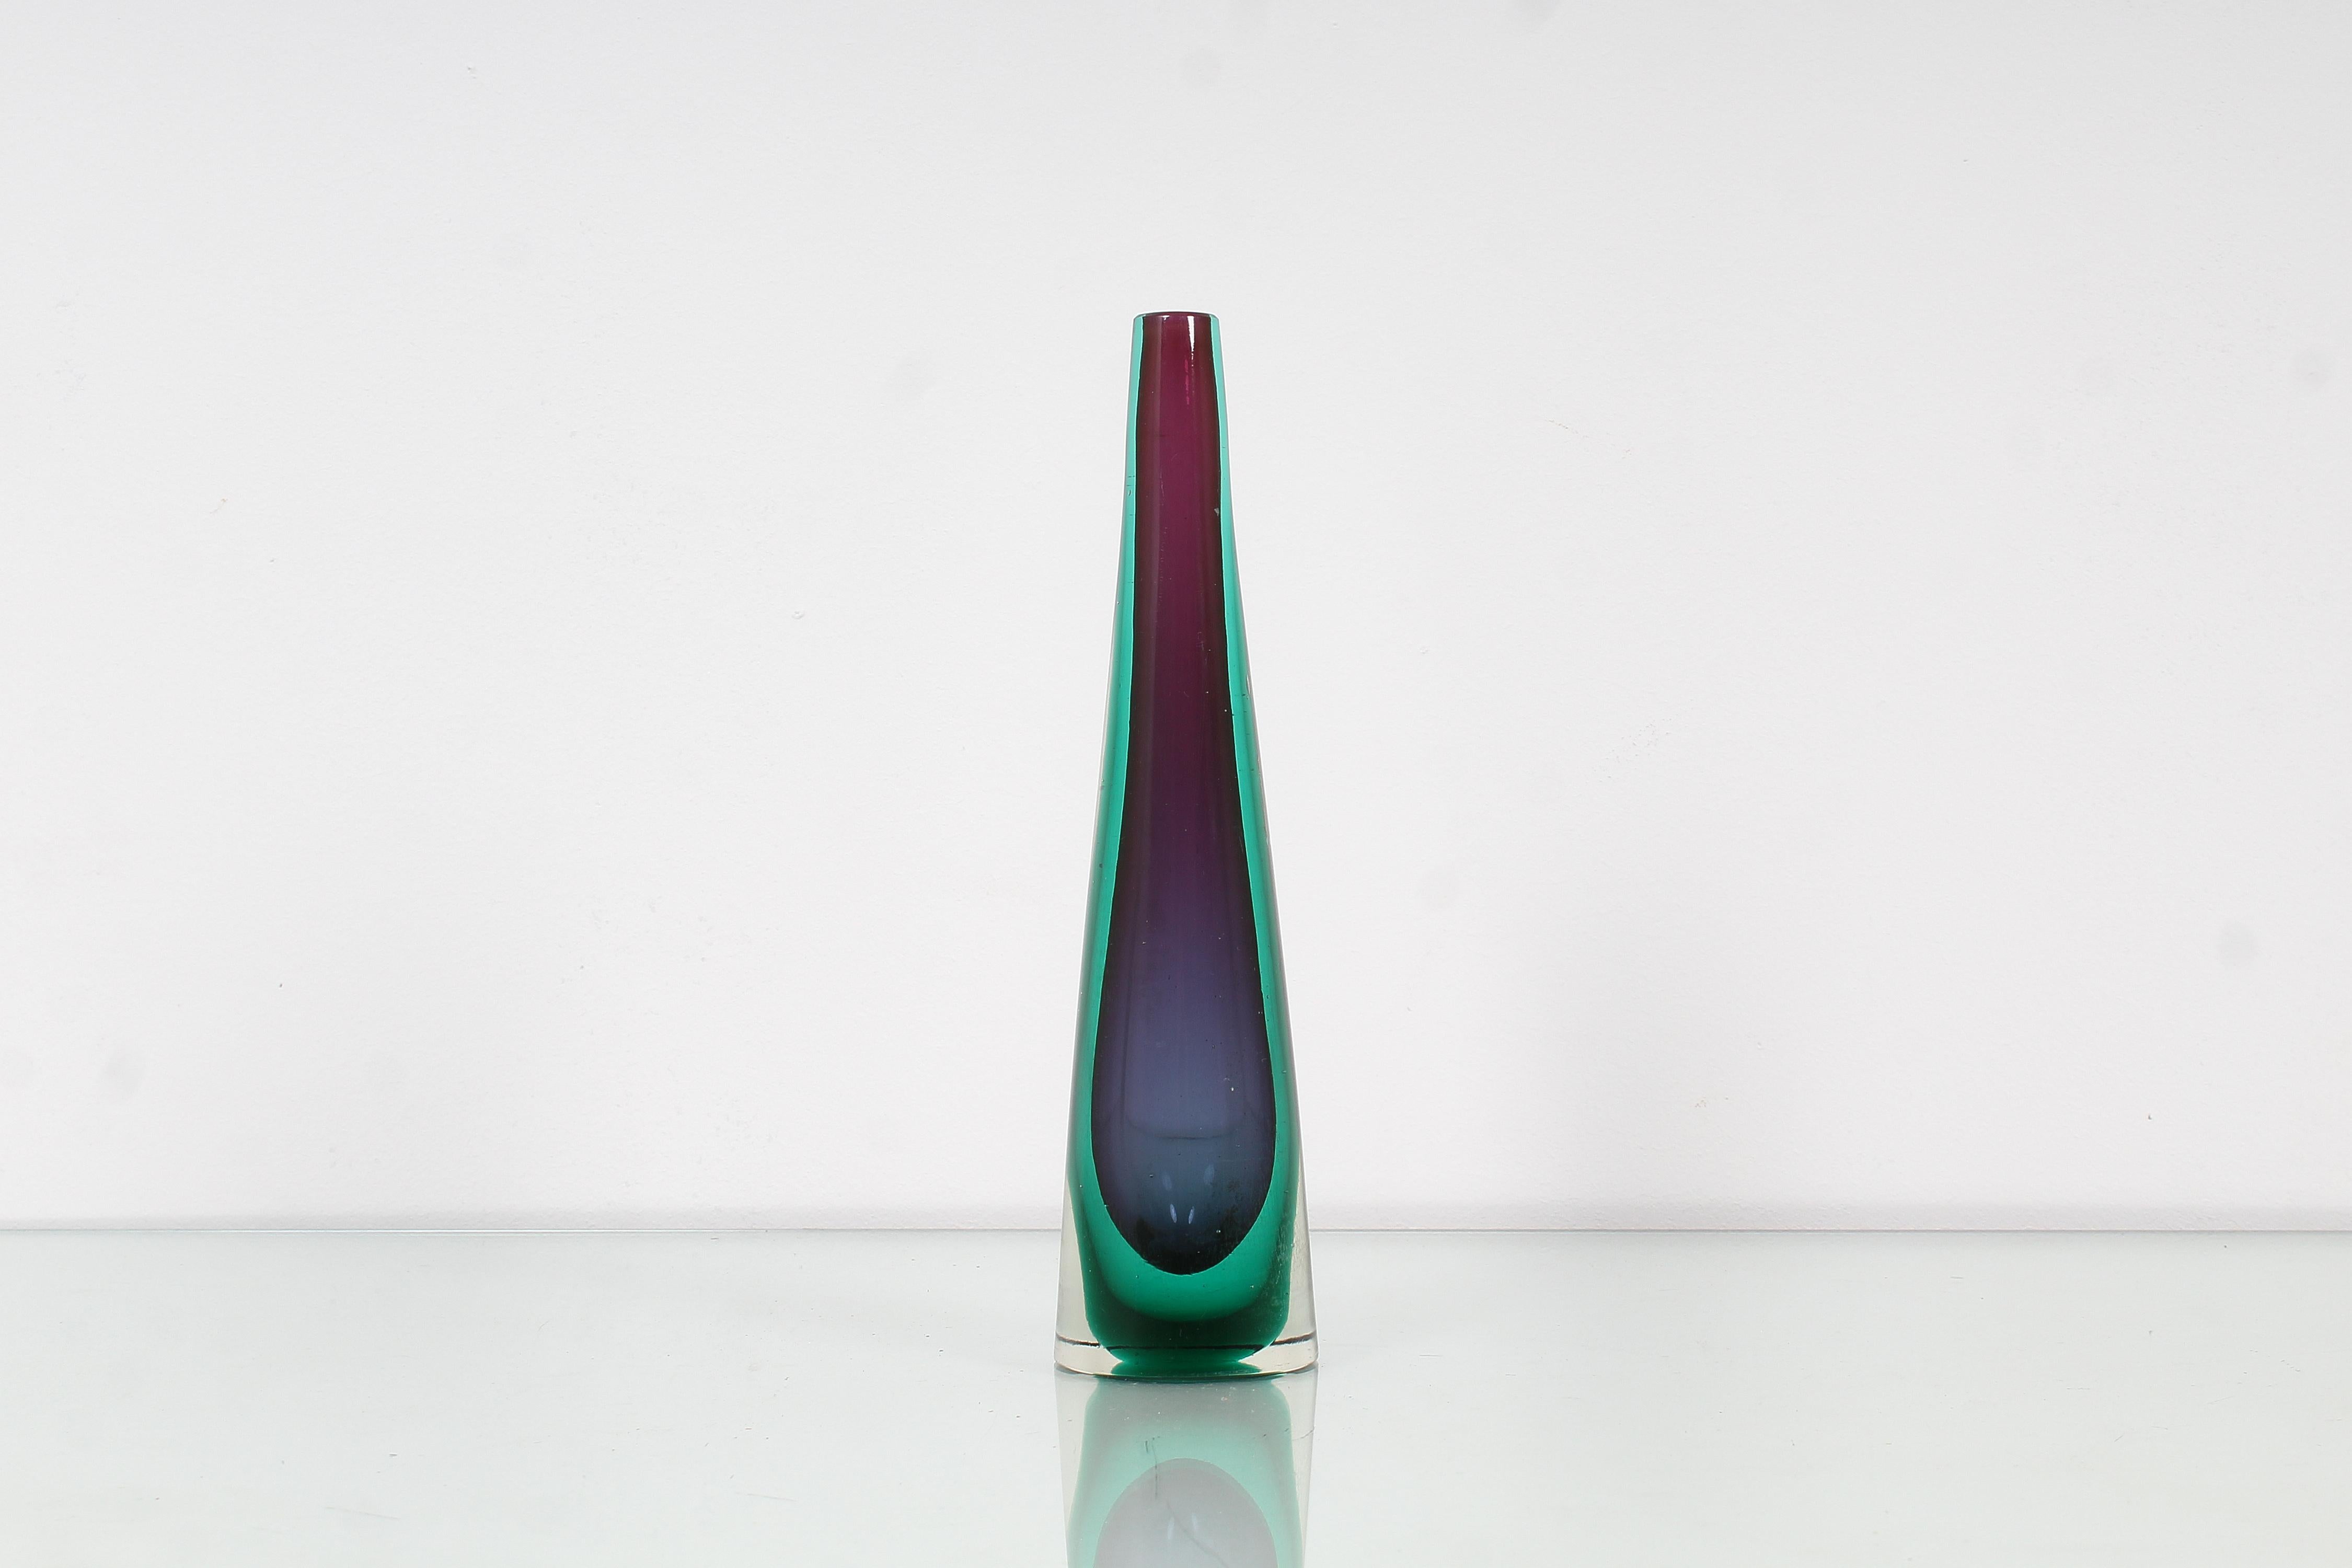 Raffinierte Vase aus blauem, violettem und grünem Murano-Glas mit einer einzigen Blüte und konischer Form. Flavio Poli zugeschrieben, Venedig 1960er Jahre.
Abnutzung entsprechend dem Alter und dem Gebrauch